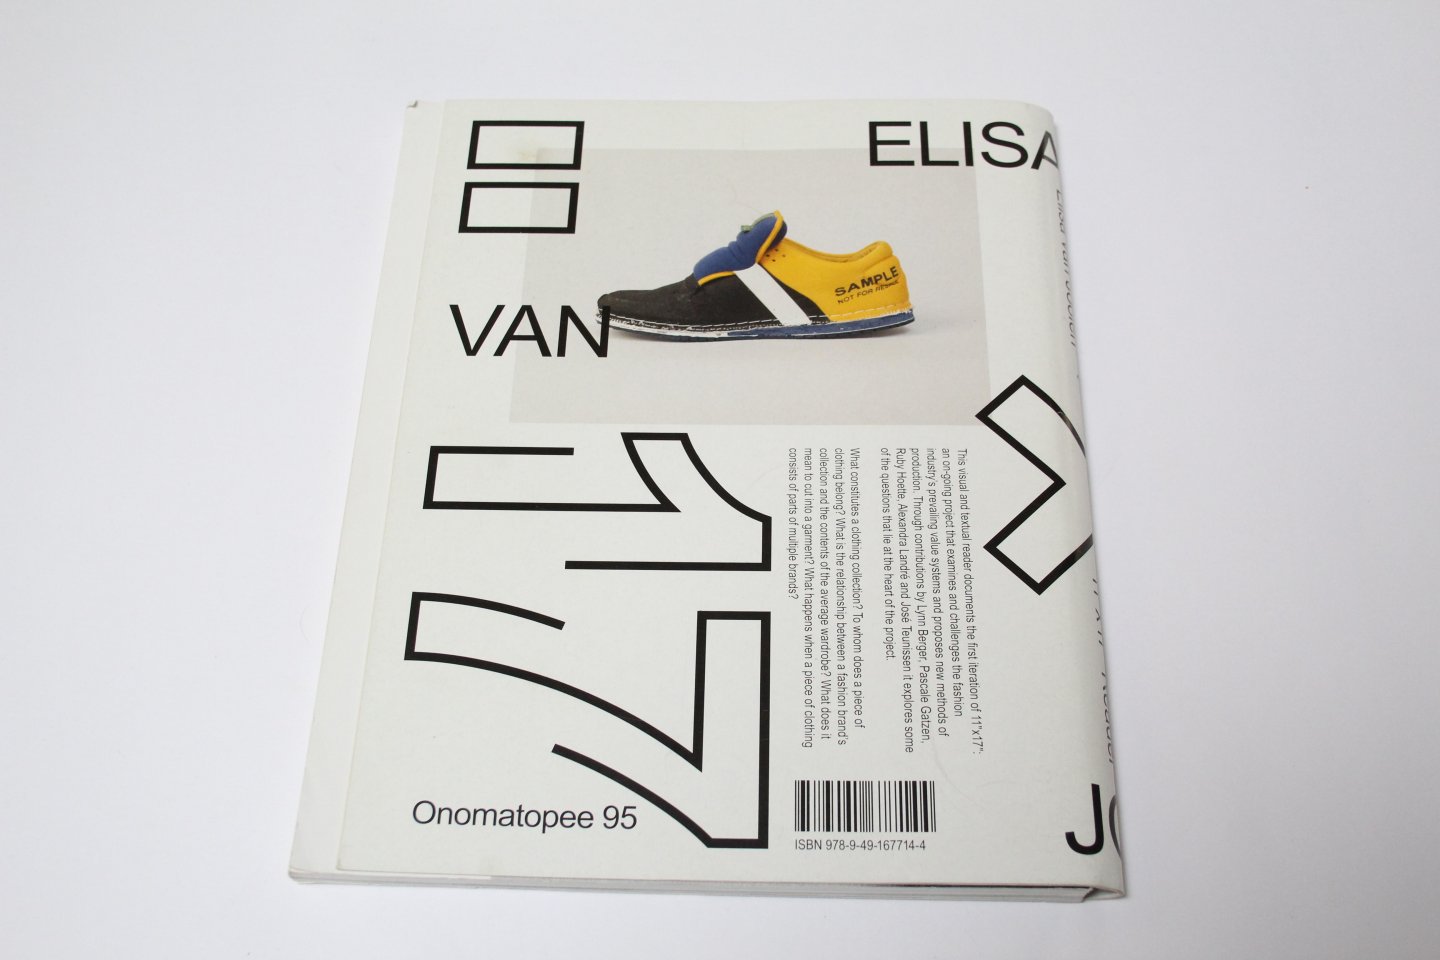 Elisa van Joolen - Elisa van Joolen 11" x 17" reader